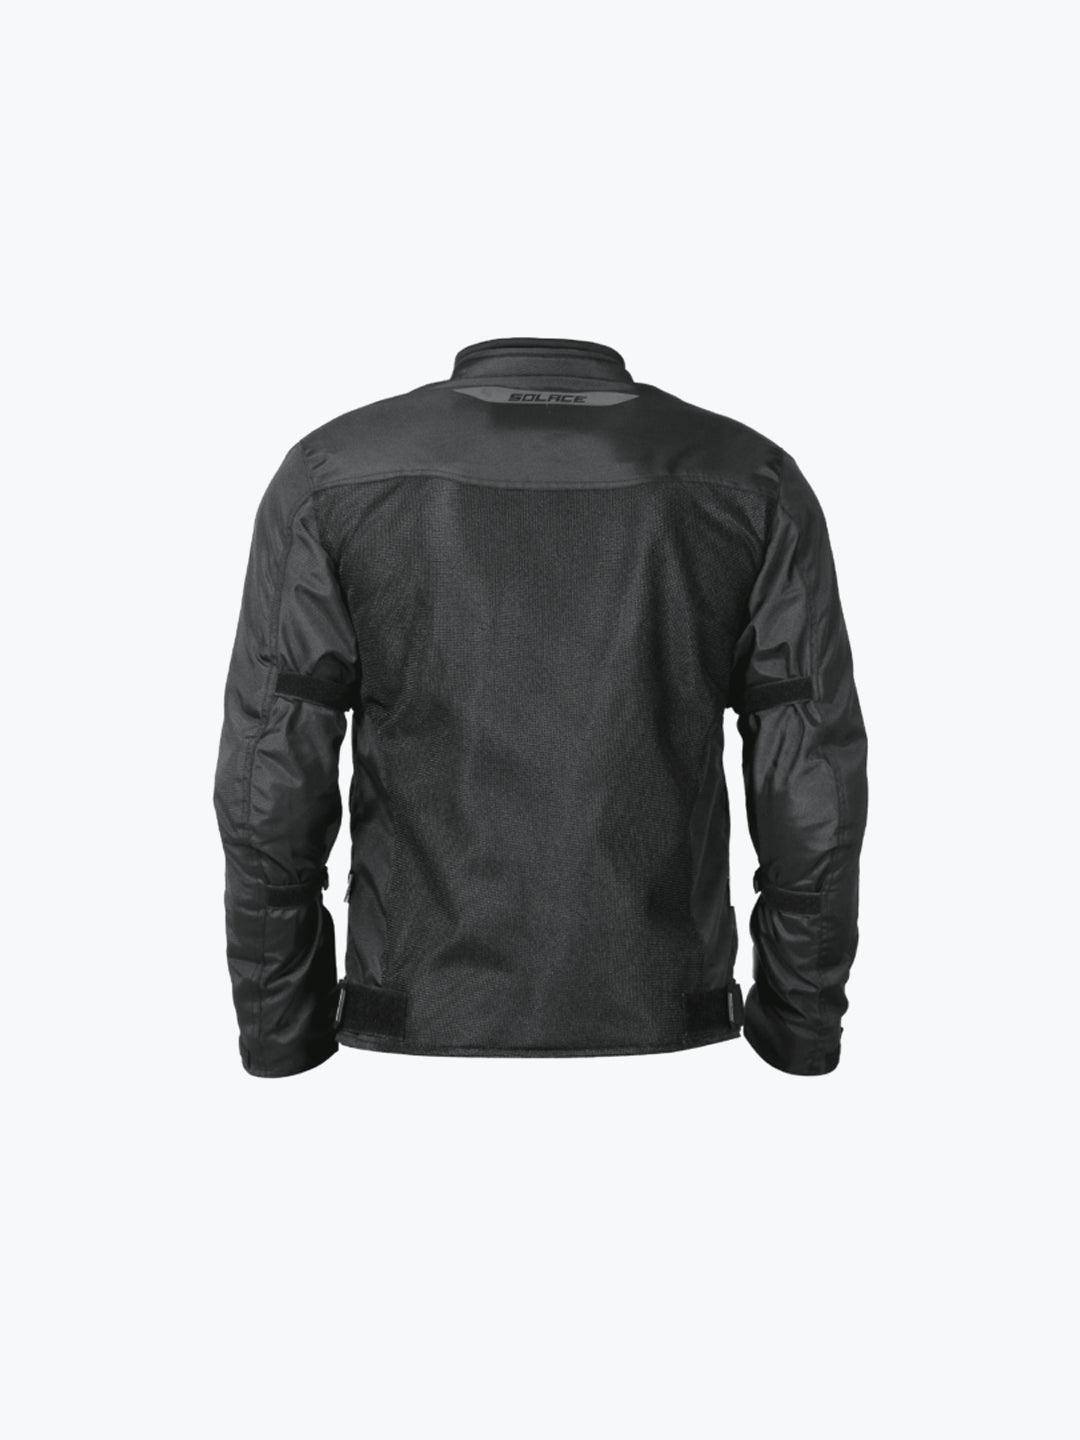 Solace Thrift Jacket - Moto Modz